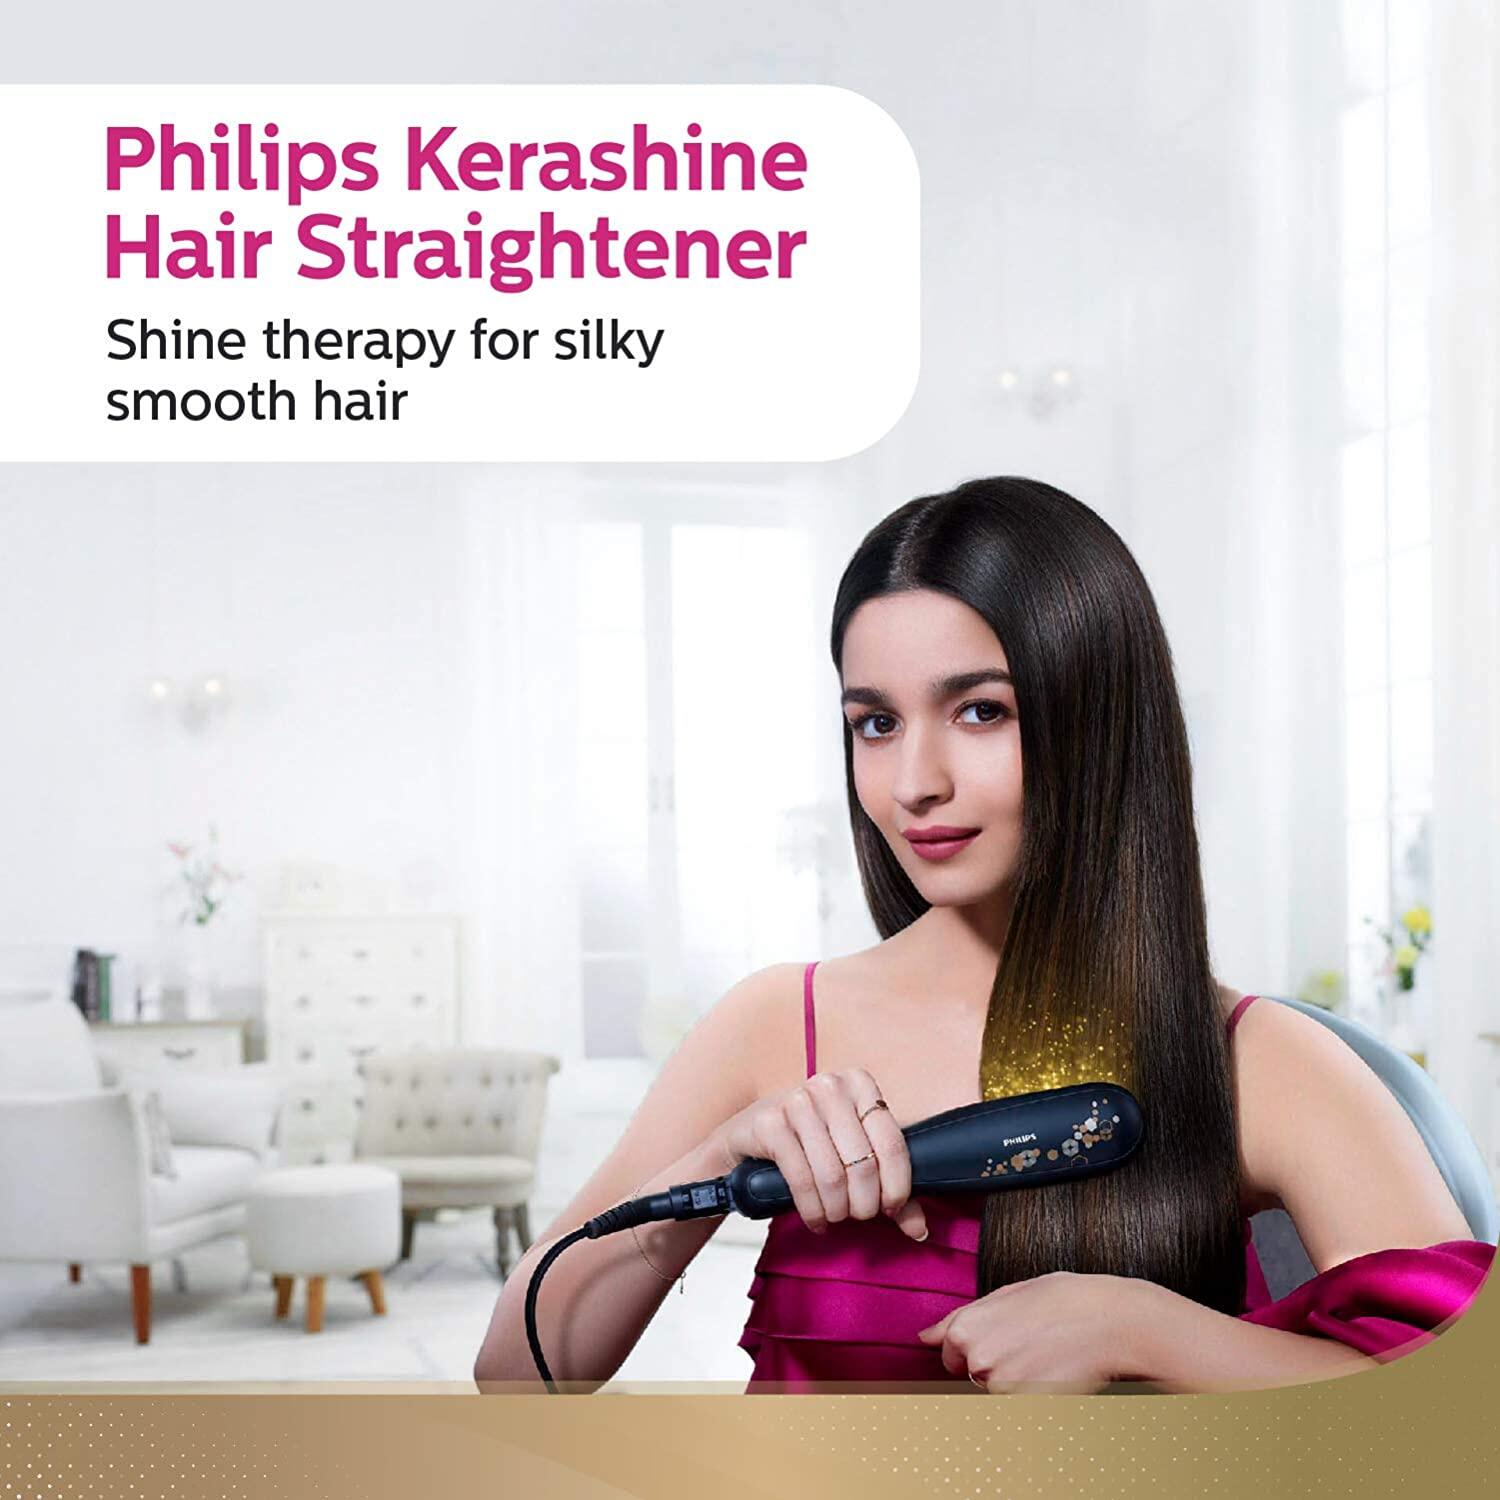 Philips KeraShine straightener HP8316/00